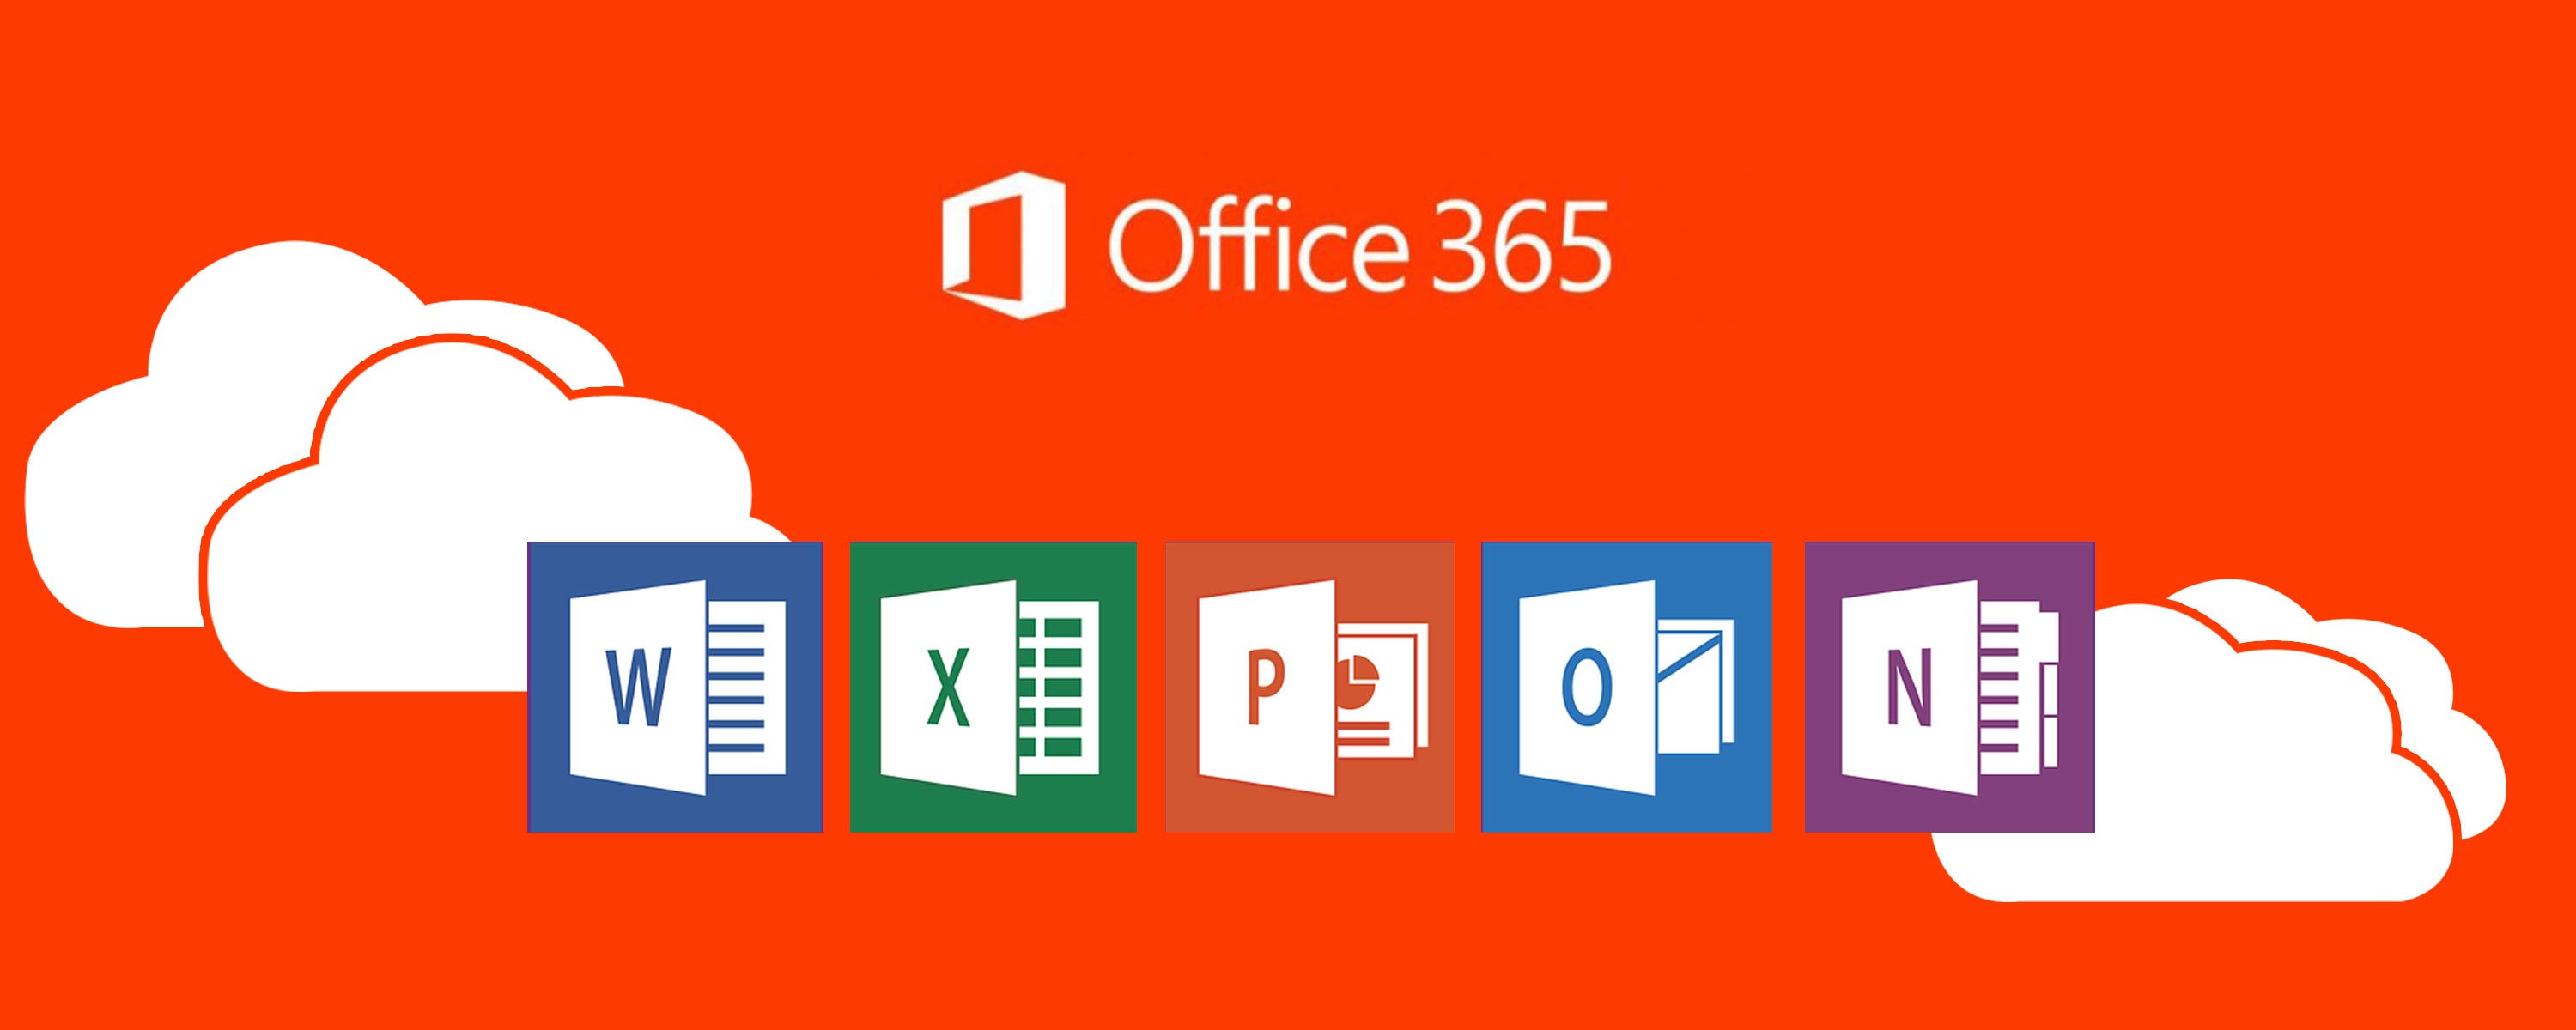 Office 365 tool. Office 365. Платформа офис 365. Значок офис 365. Офис 365 про плюс.